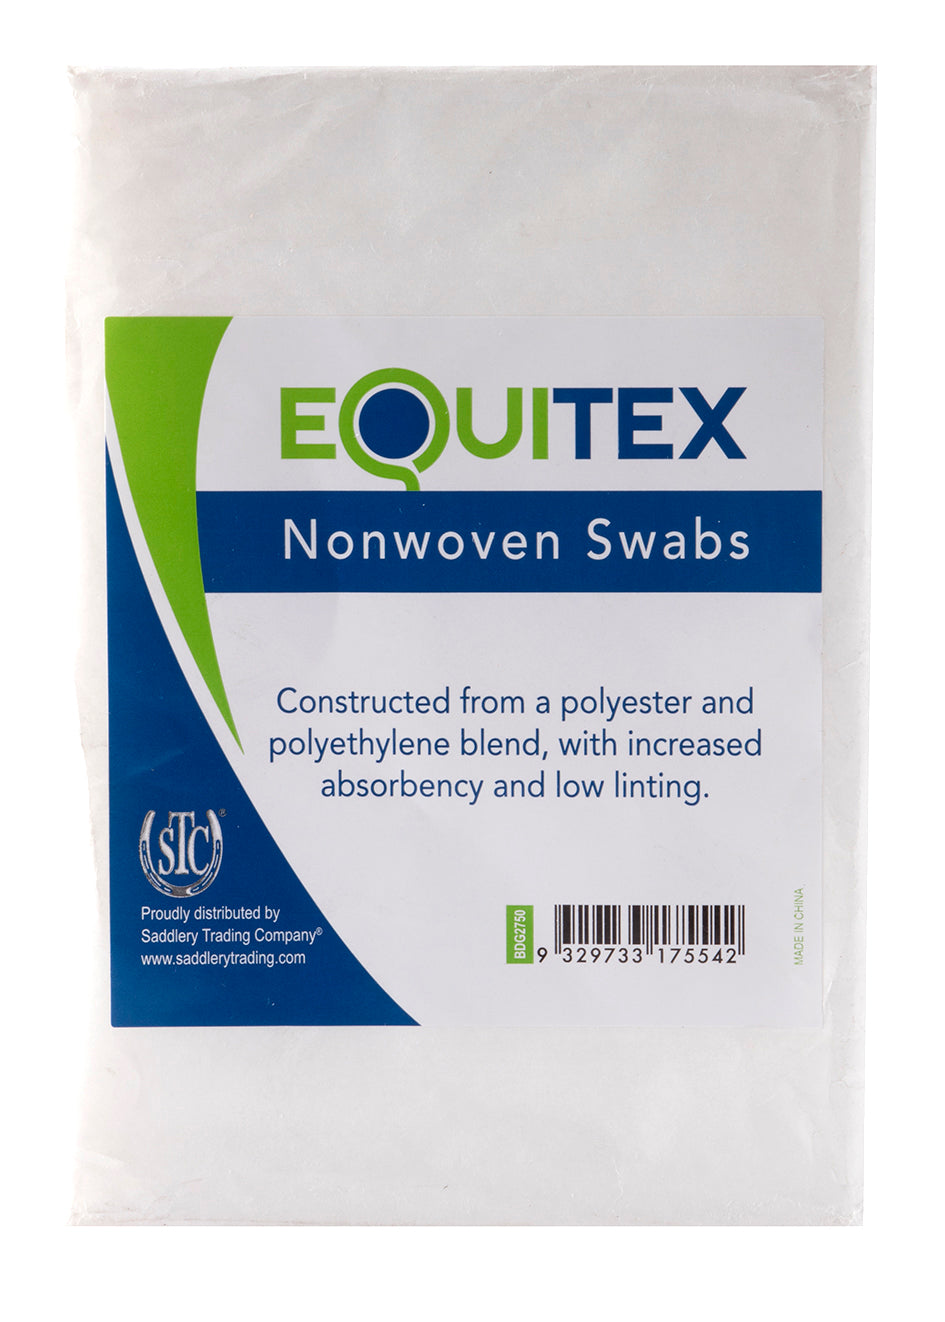 Equitex Nonwoven Swabs